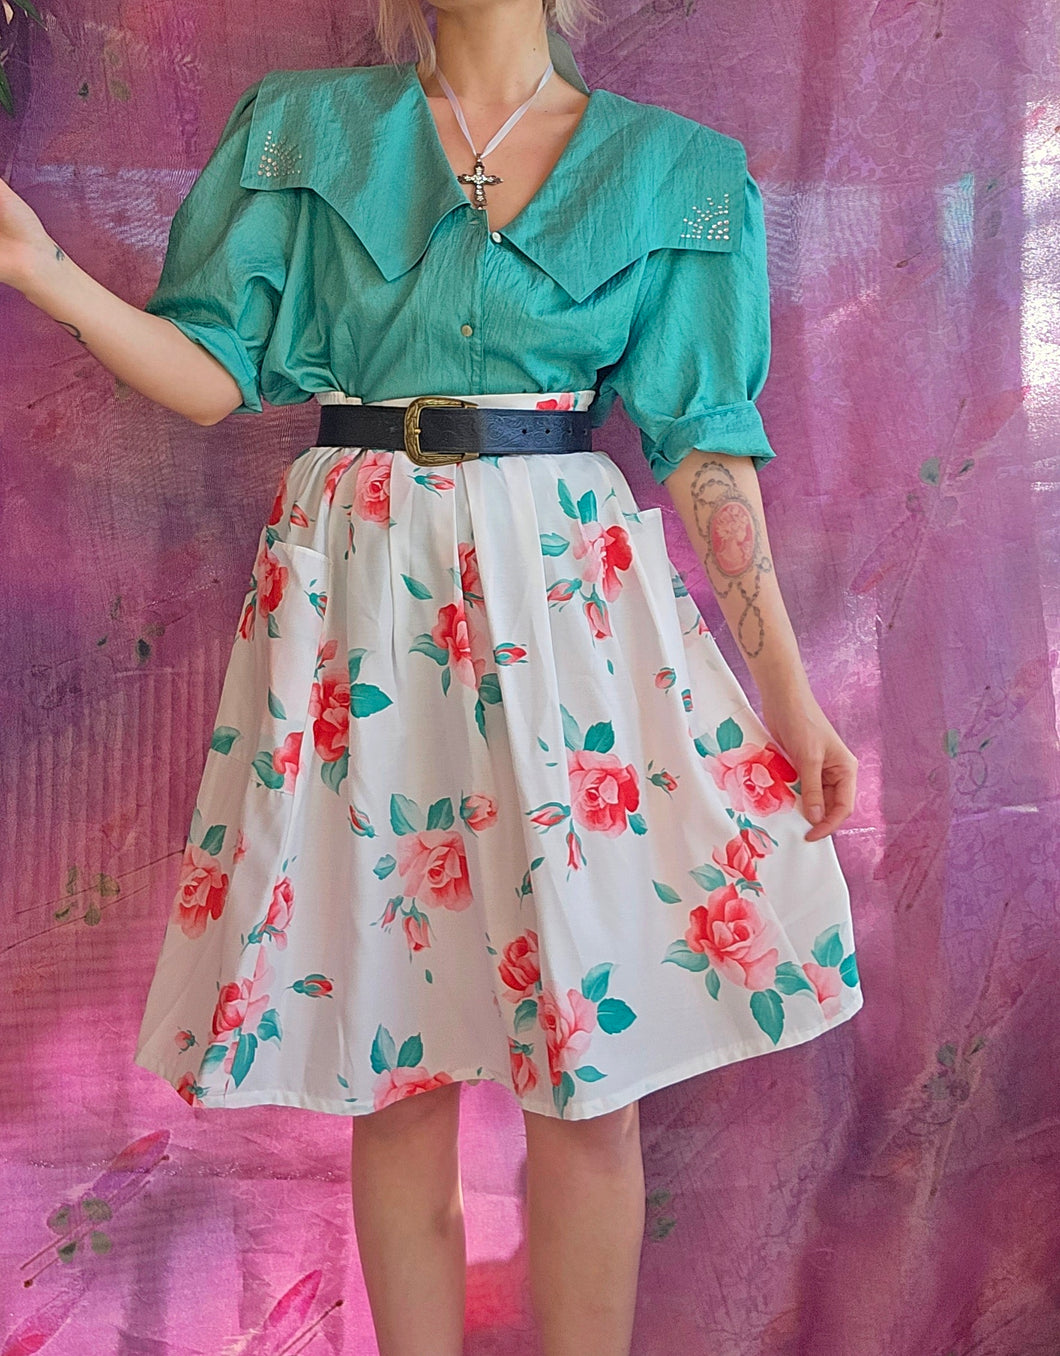 90s Rose Print Cottage Skirt